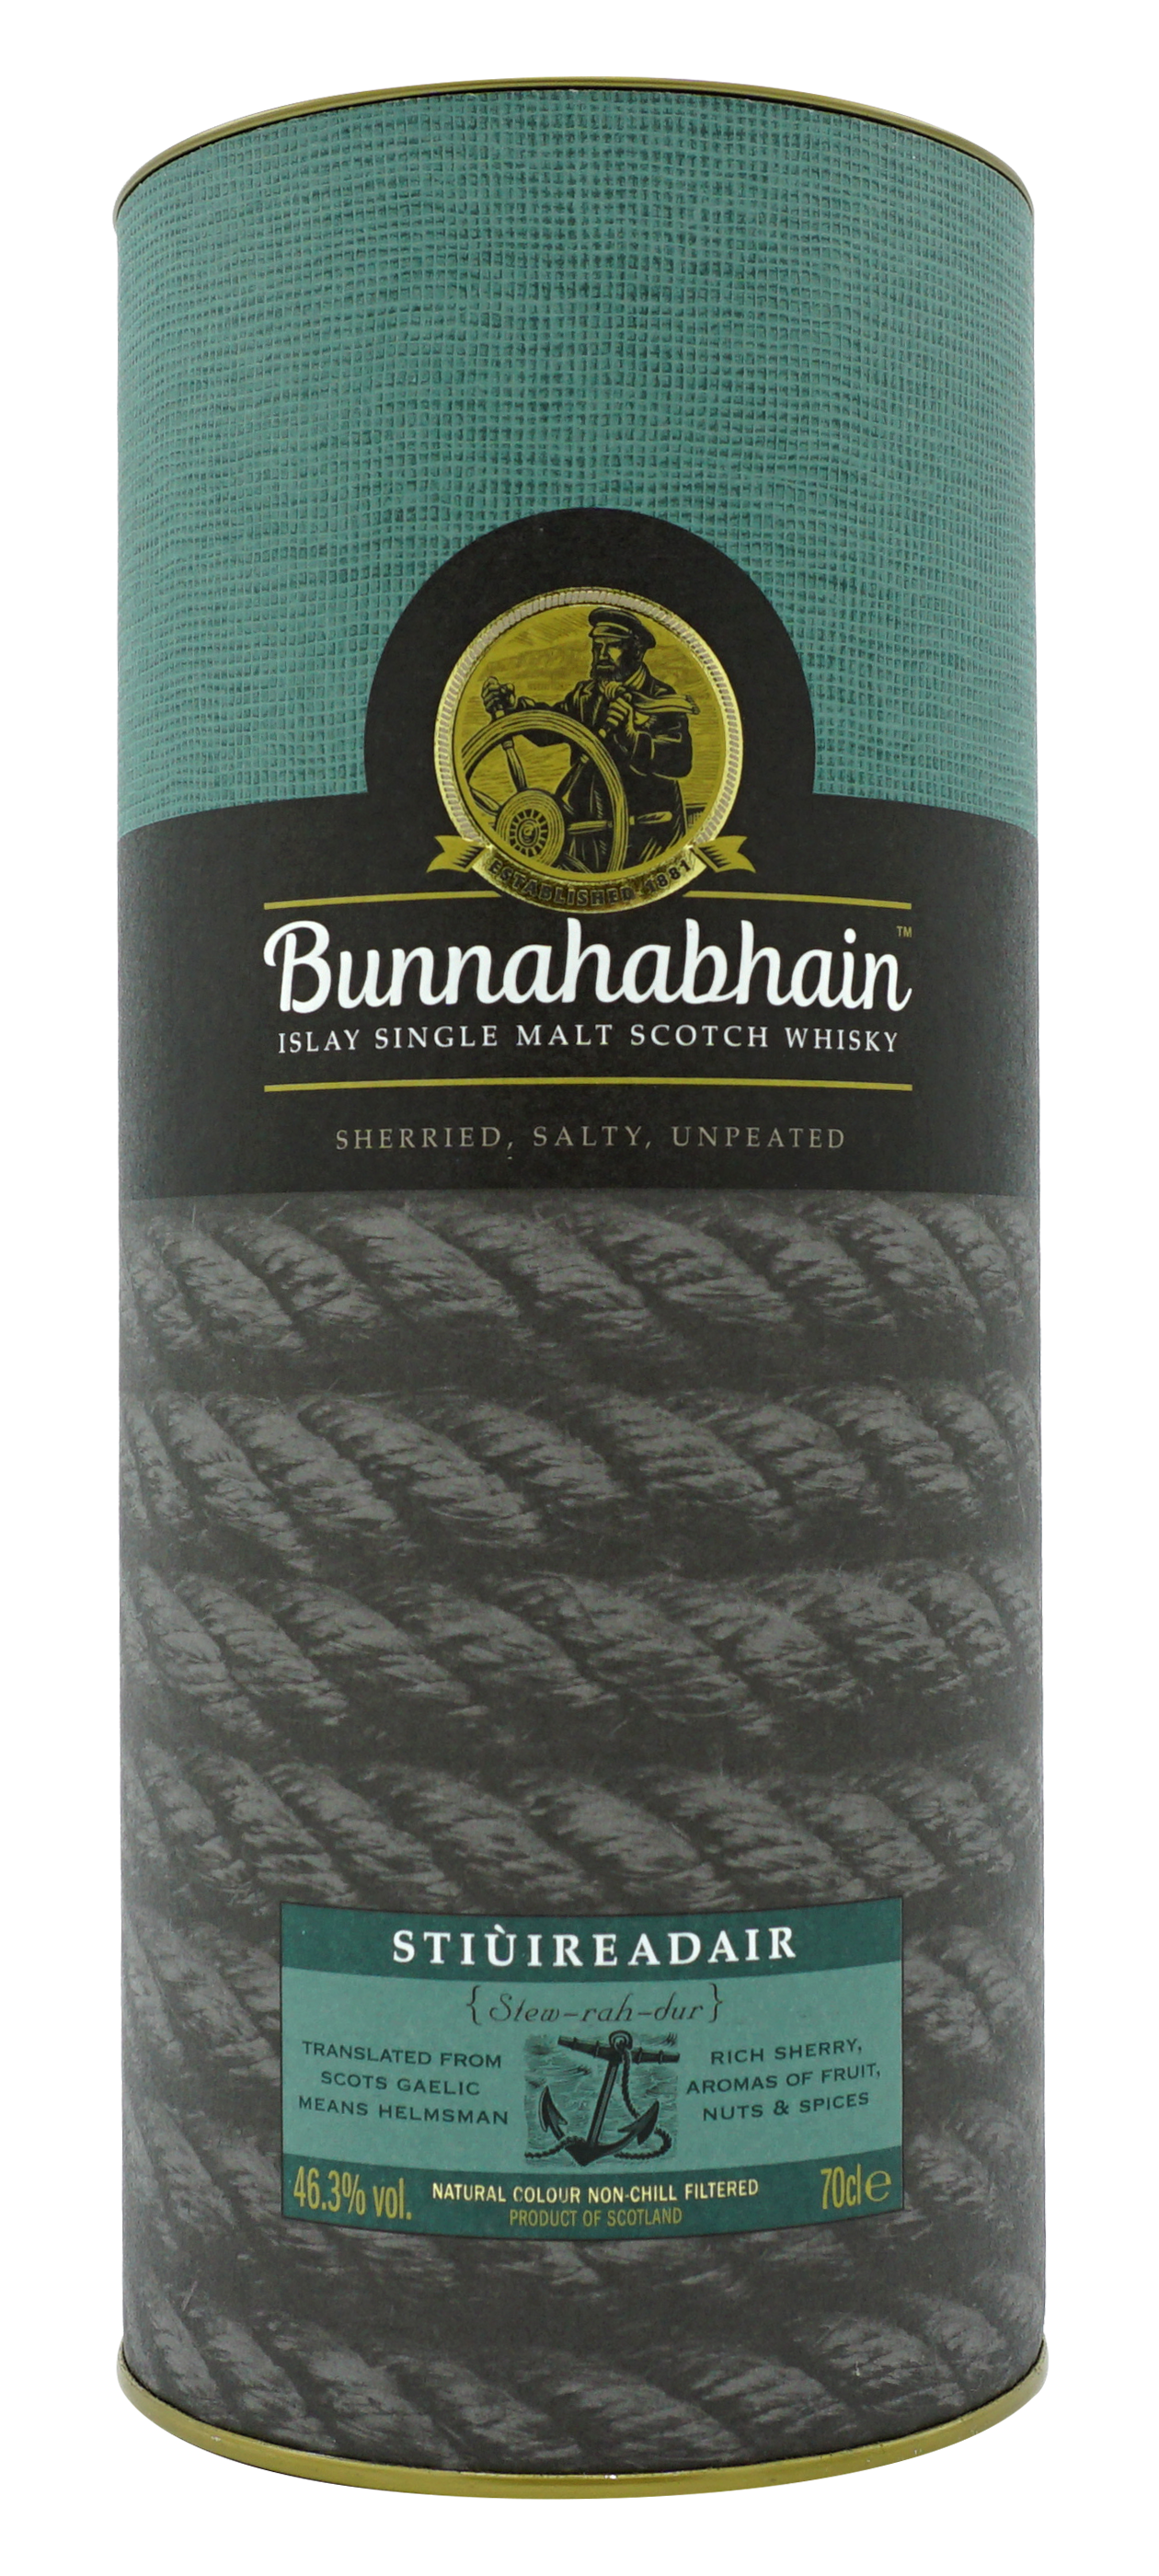 Bunnahabhain Stiuireadair Single Malt 70cl 463 Koker